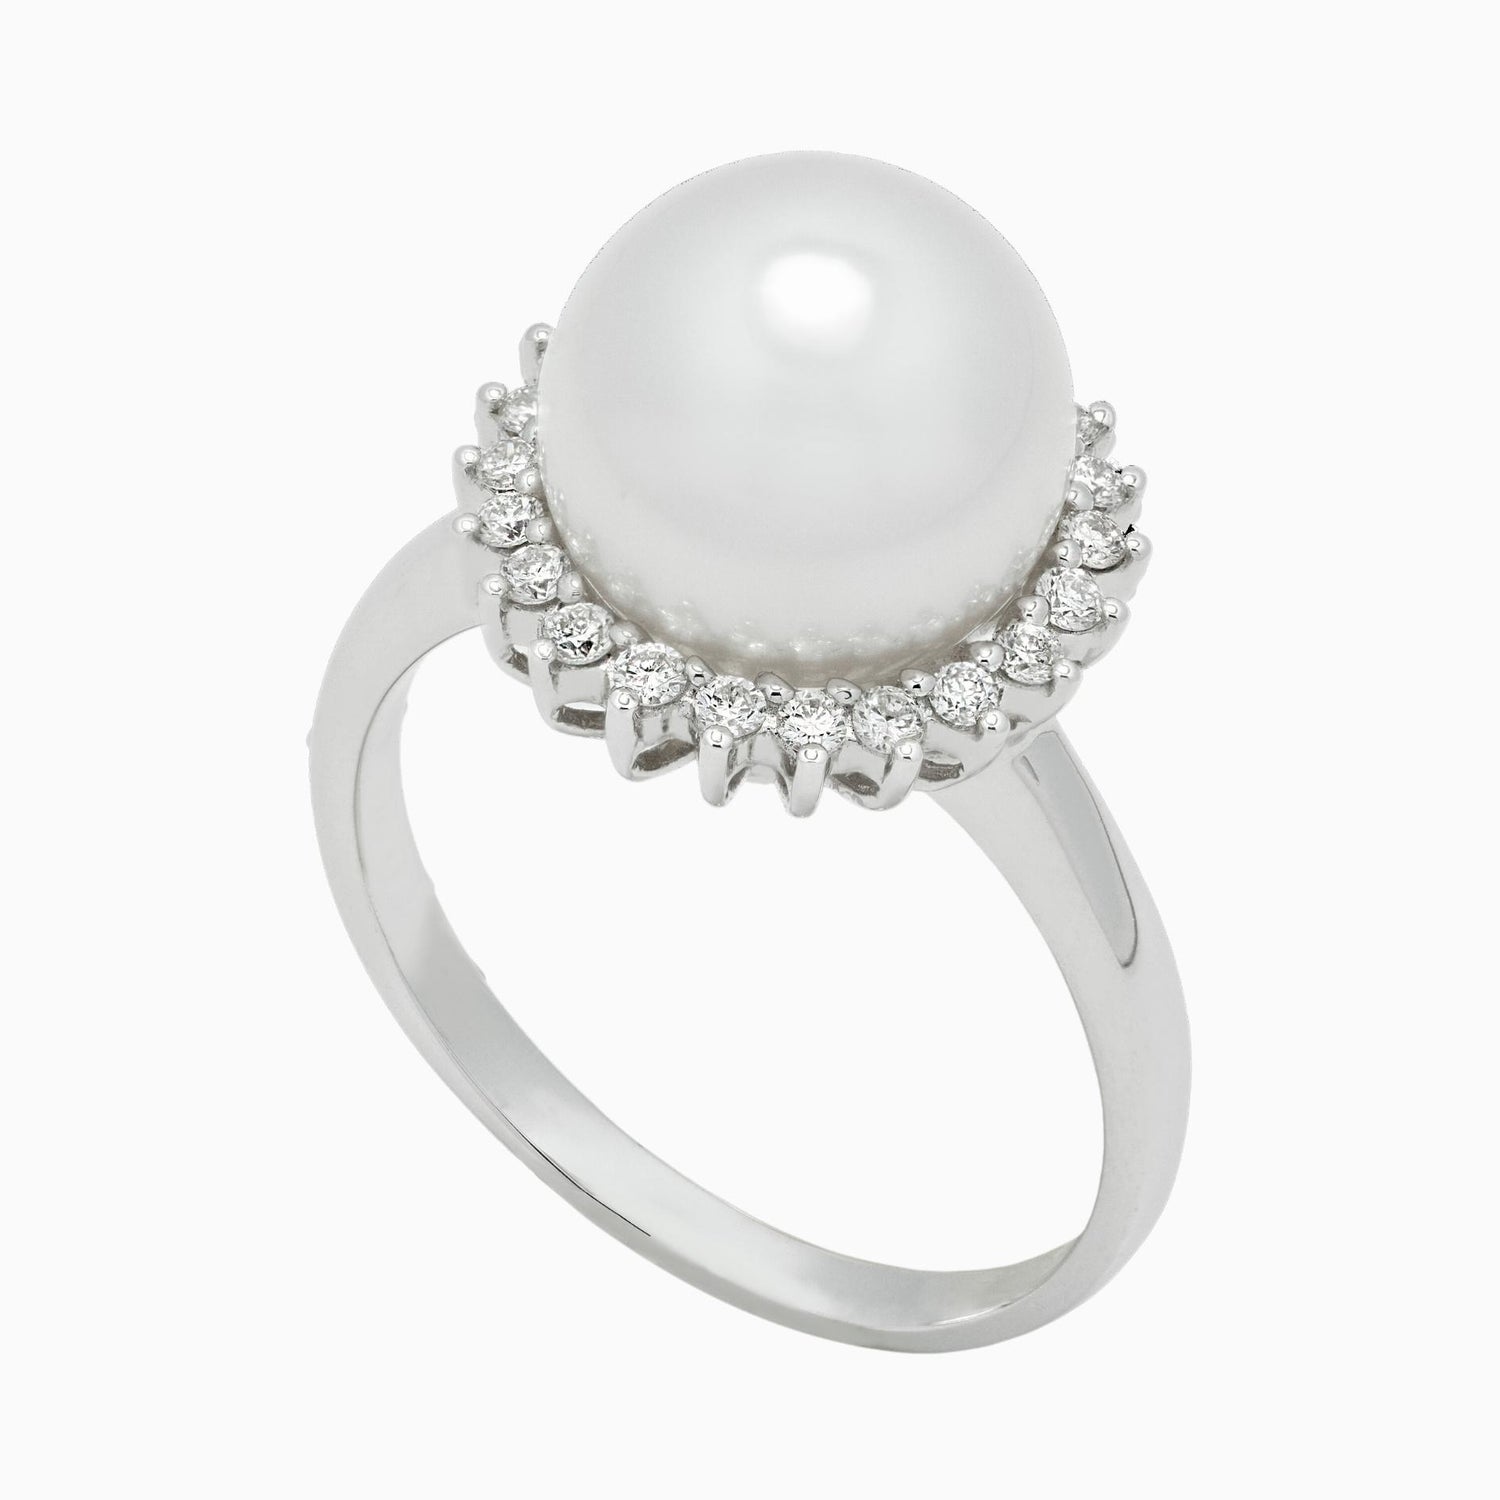 Pearl Rings